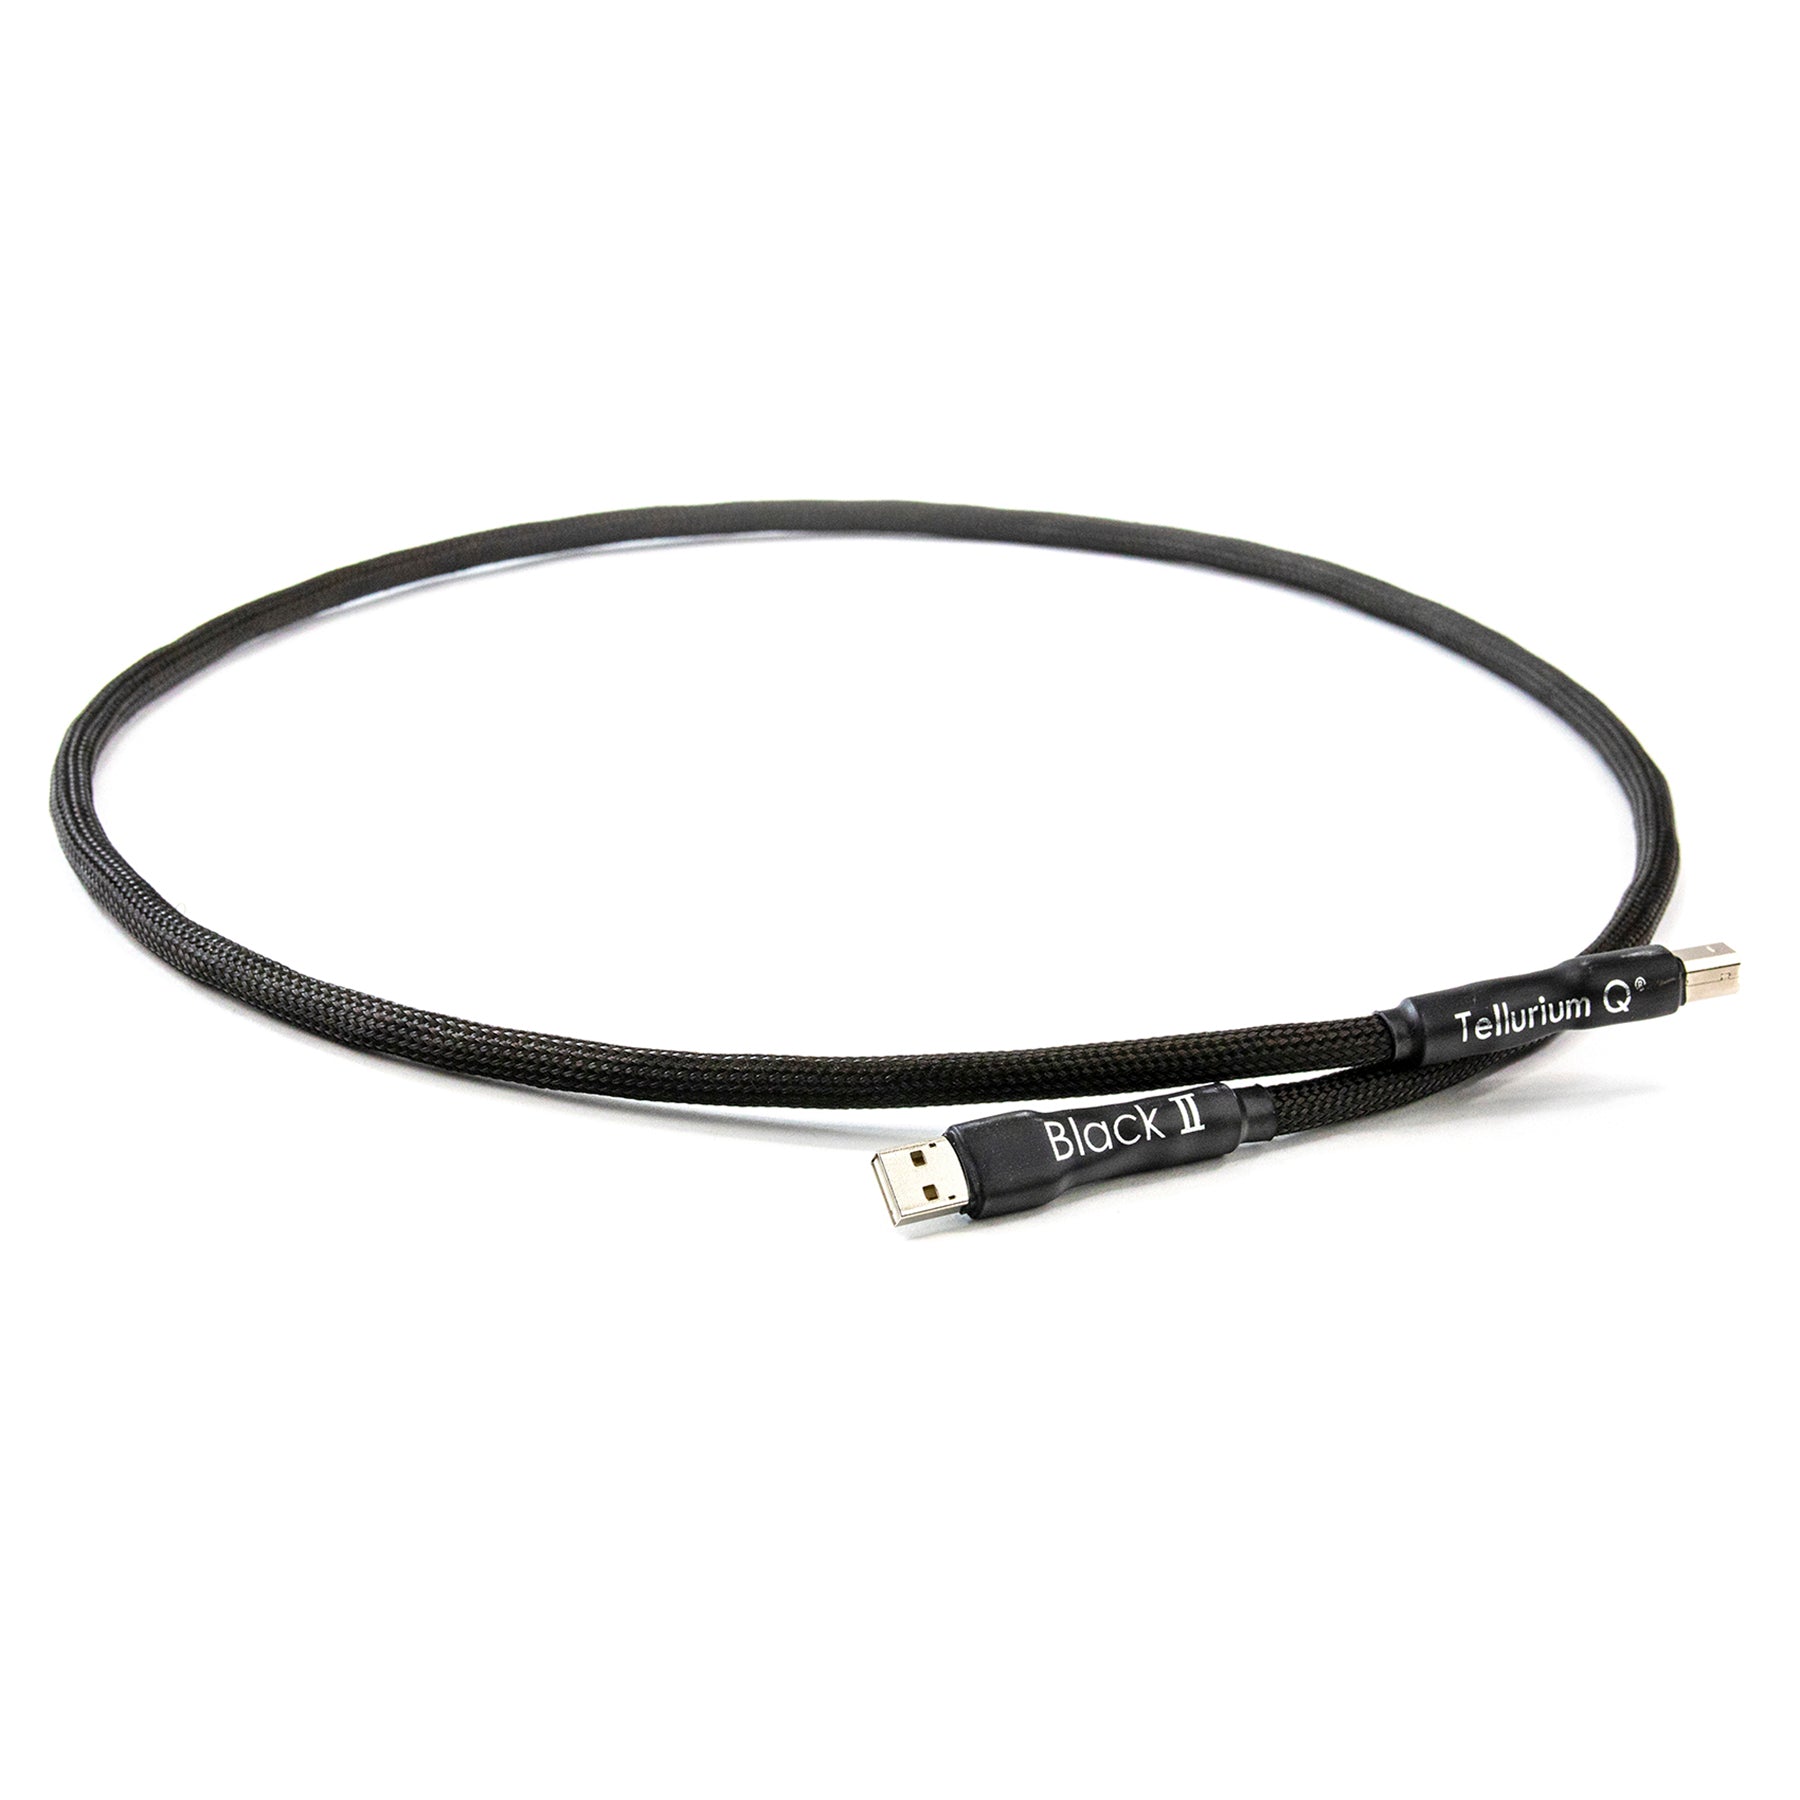 Tellurium Q Black II USB Cable